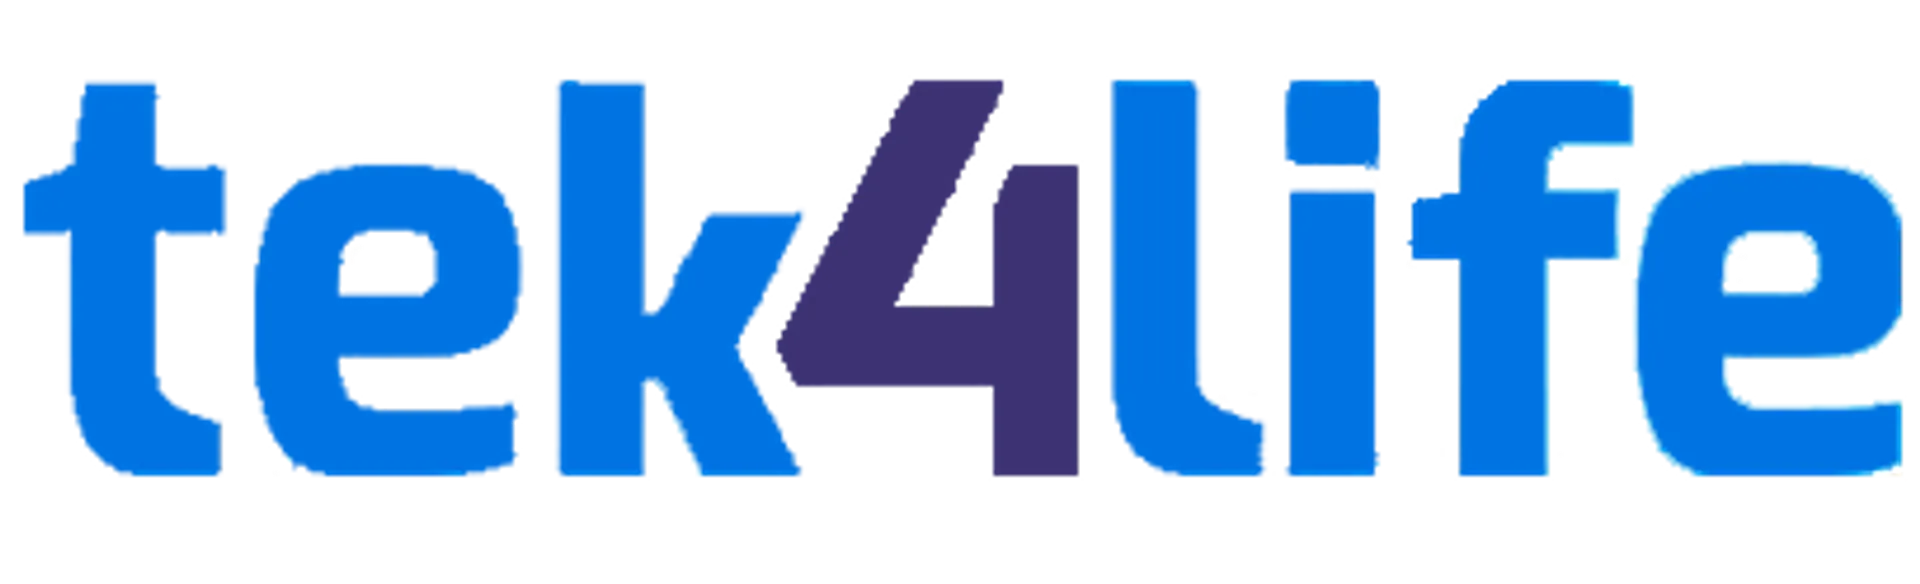 TEK4LIFE logo de folhetos